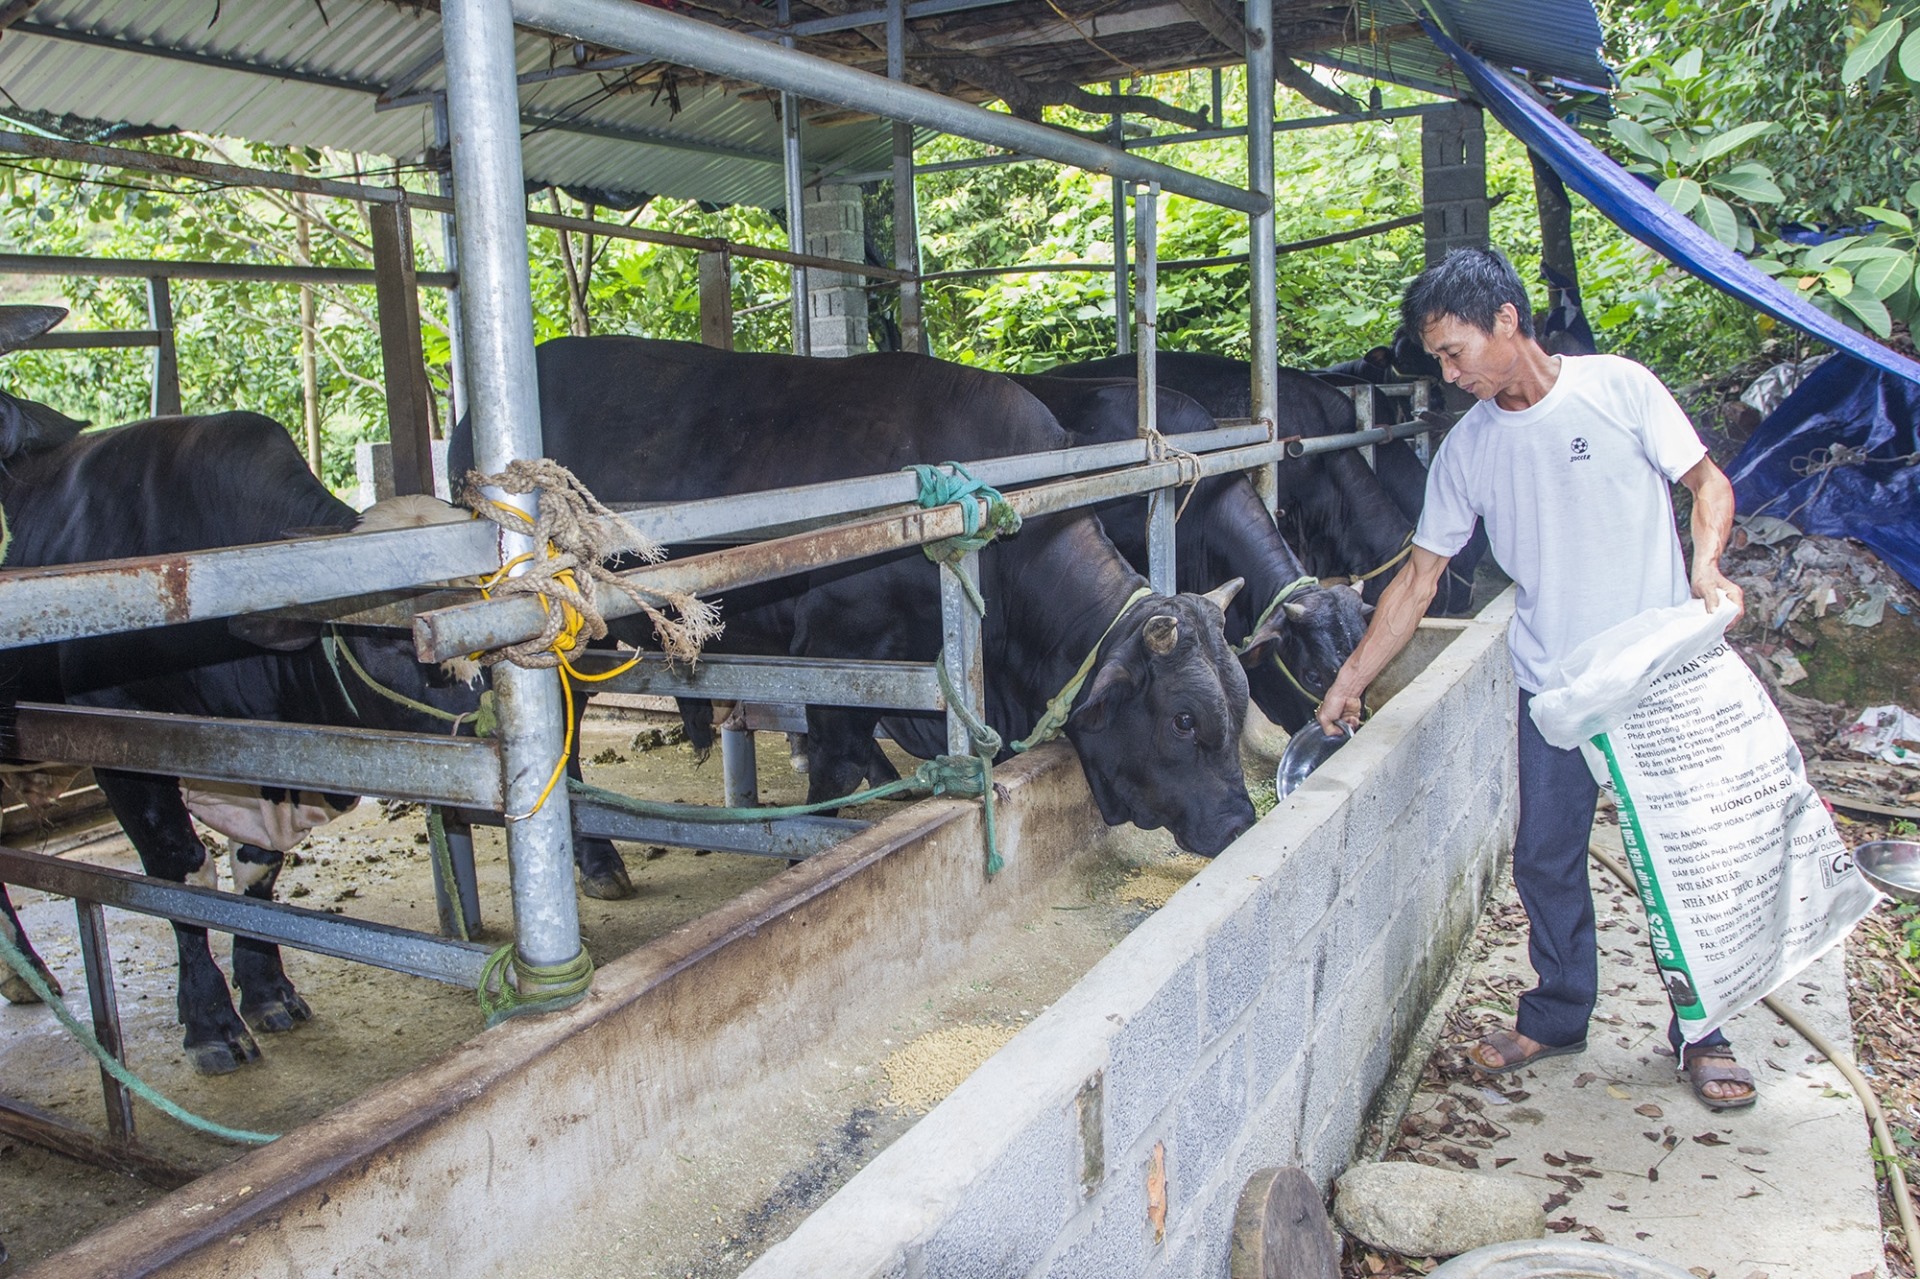 Được vay 50 triệu đồng từ chương trình cho vay giải quyết việc làm của NHCSXH, ông Hoàng Văn Thế ở xóm Thành Tiến, xã Tràng Xá, đầu tư nuôi bò thịt và đến nay có thu nhập 150 triệu đồng/năm. Ảnh: báo Thái Nguyên